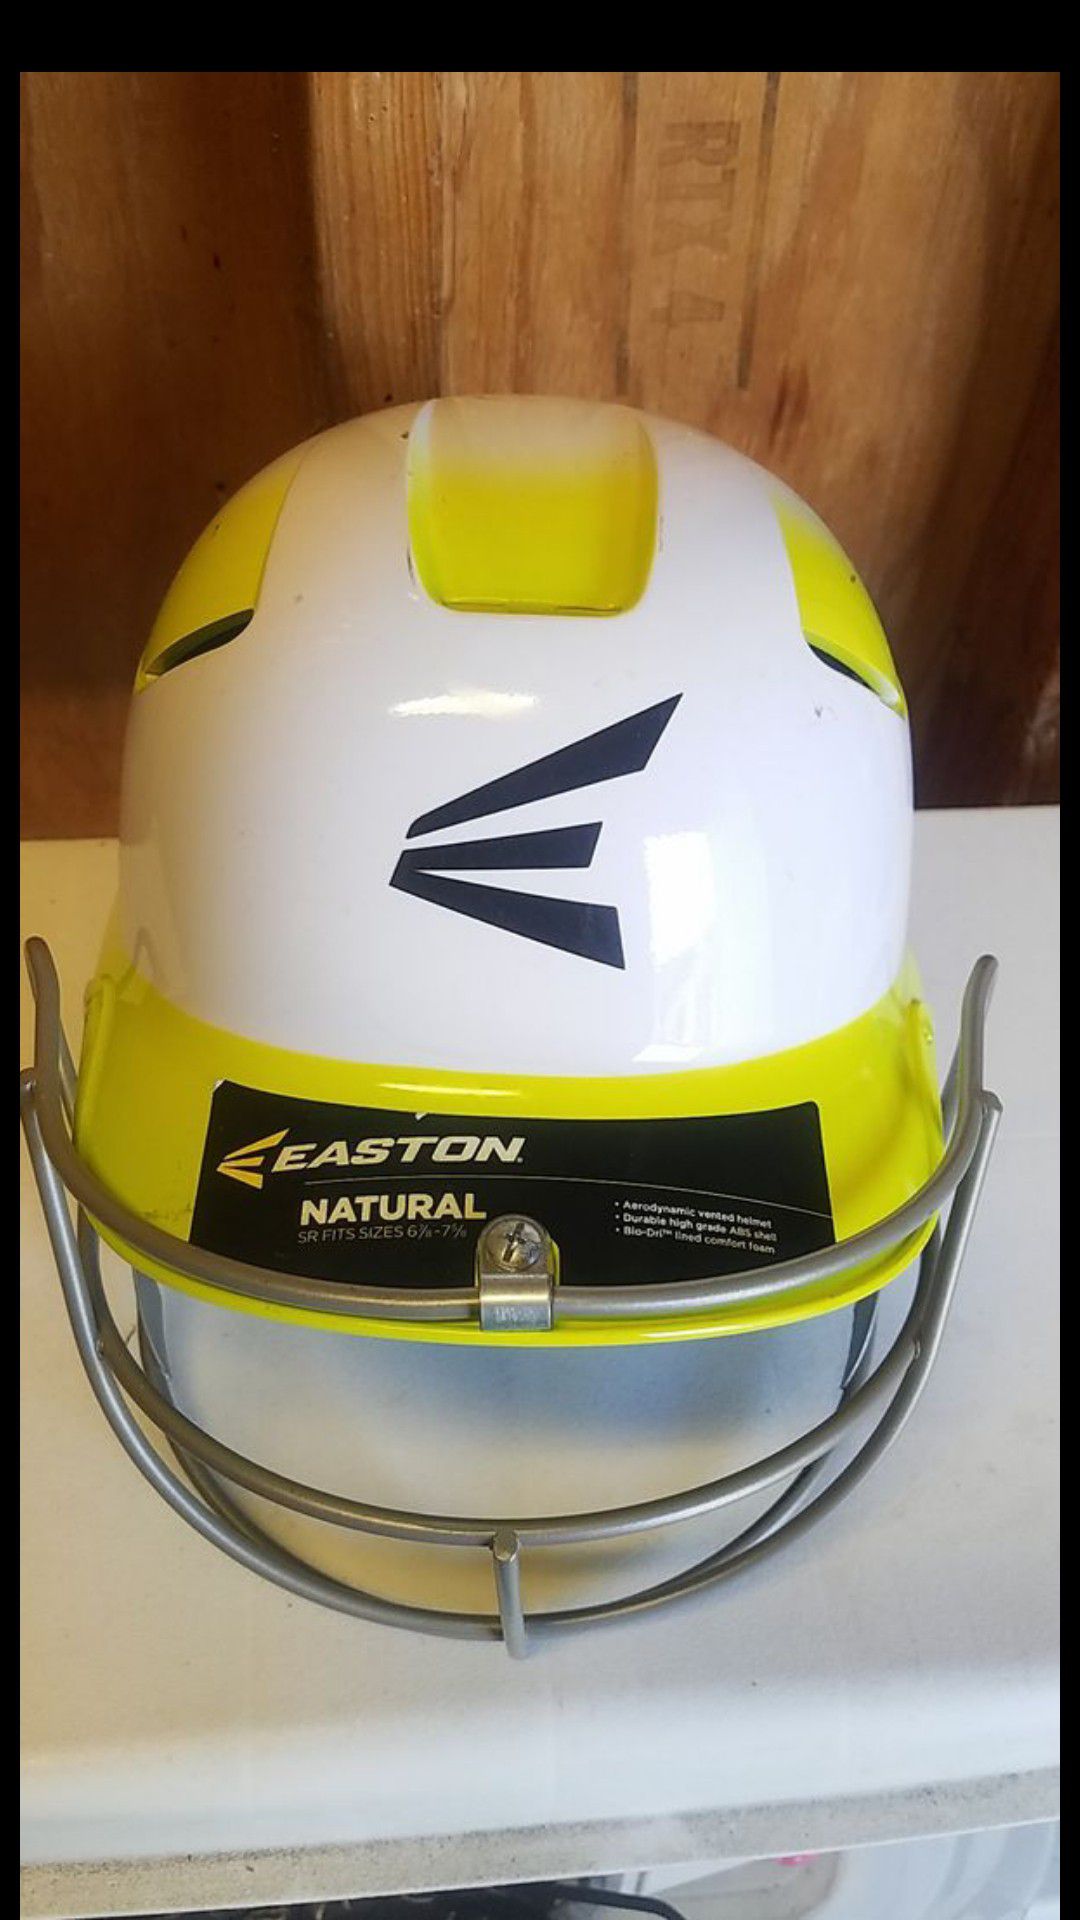 Easton baseball/softball batting helmet